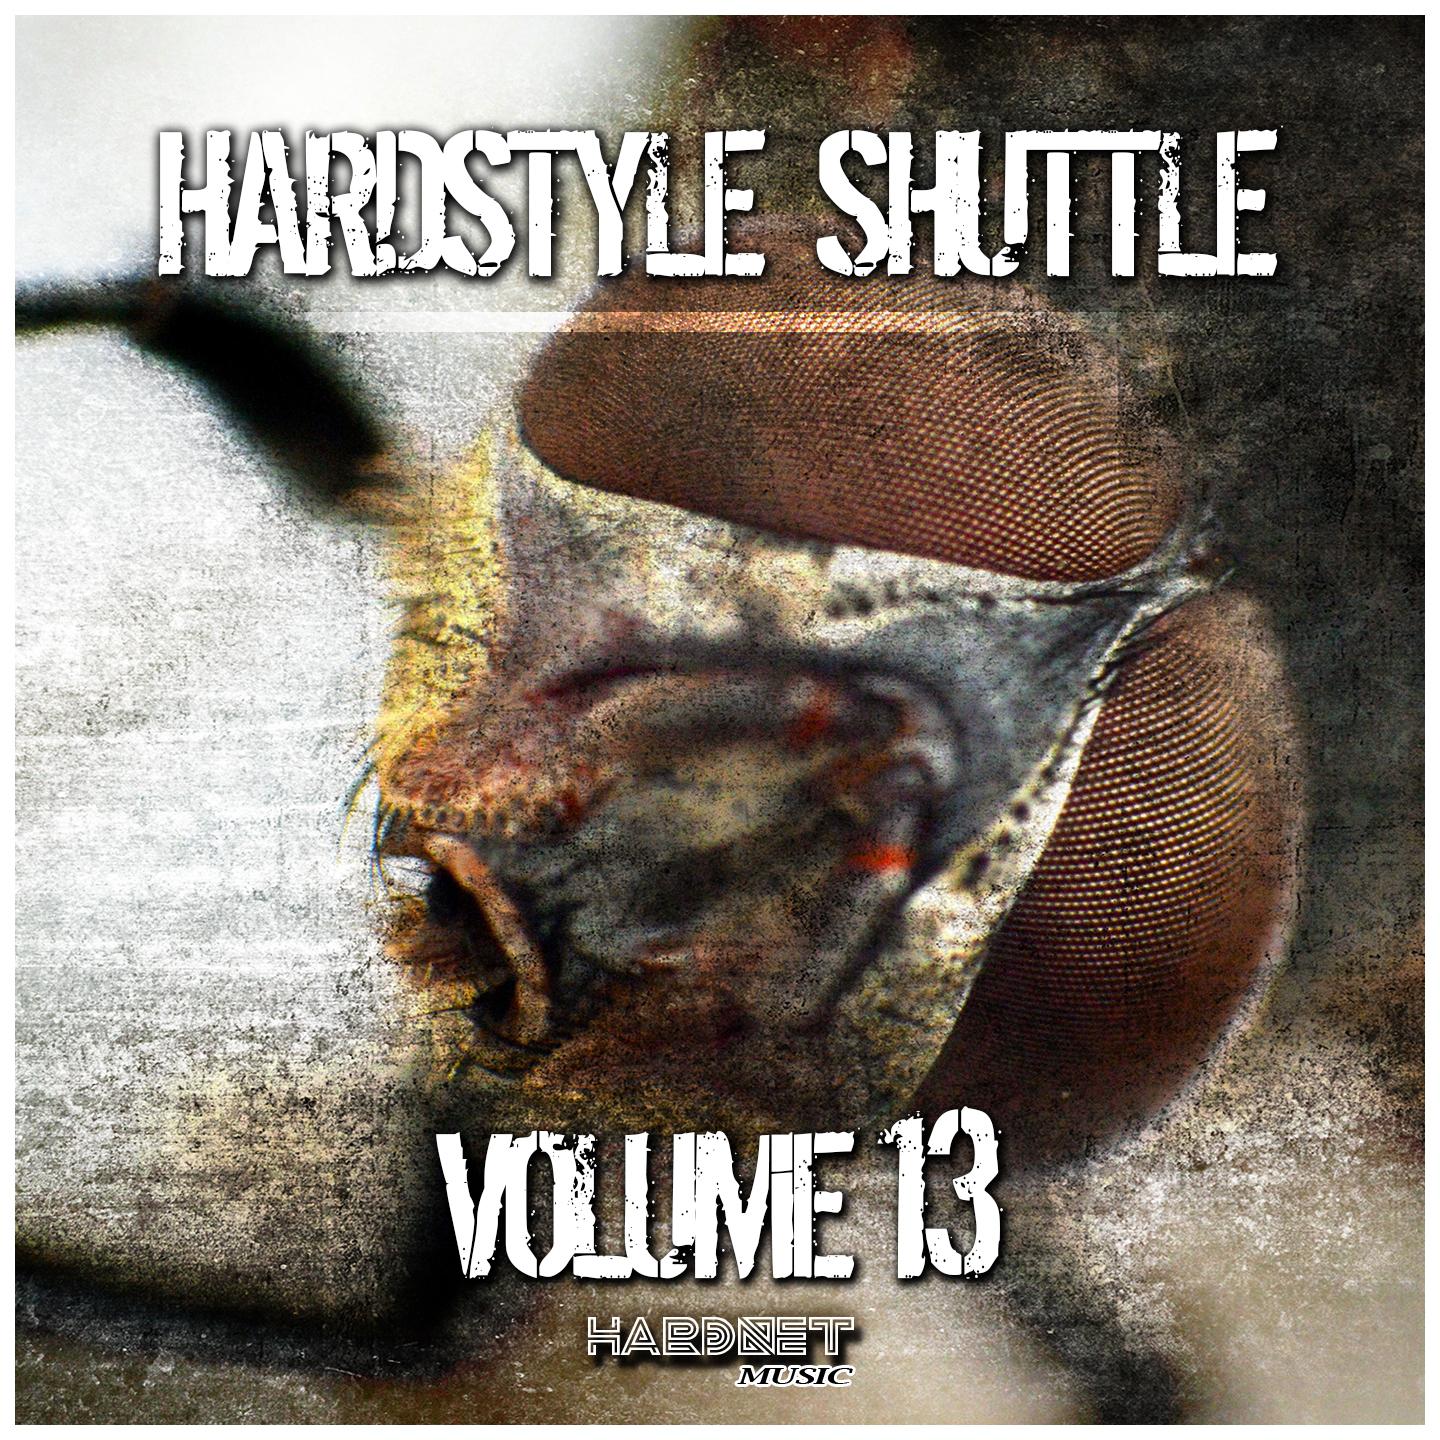 Hardstyle Shuttle, Vol.13